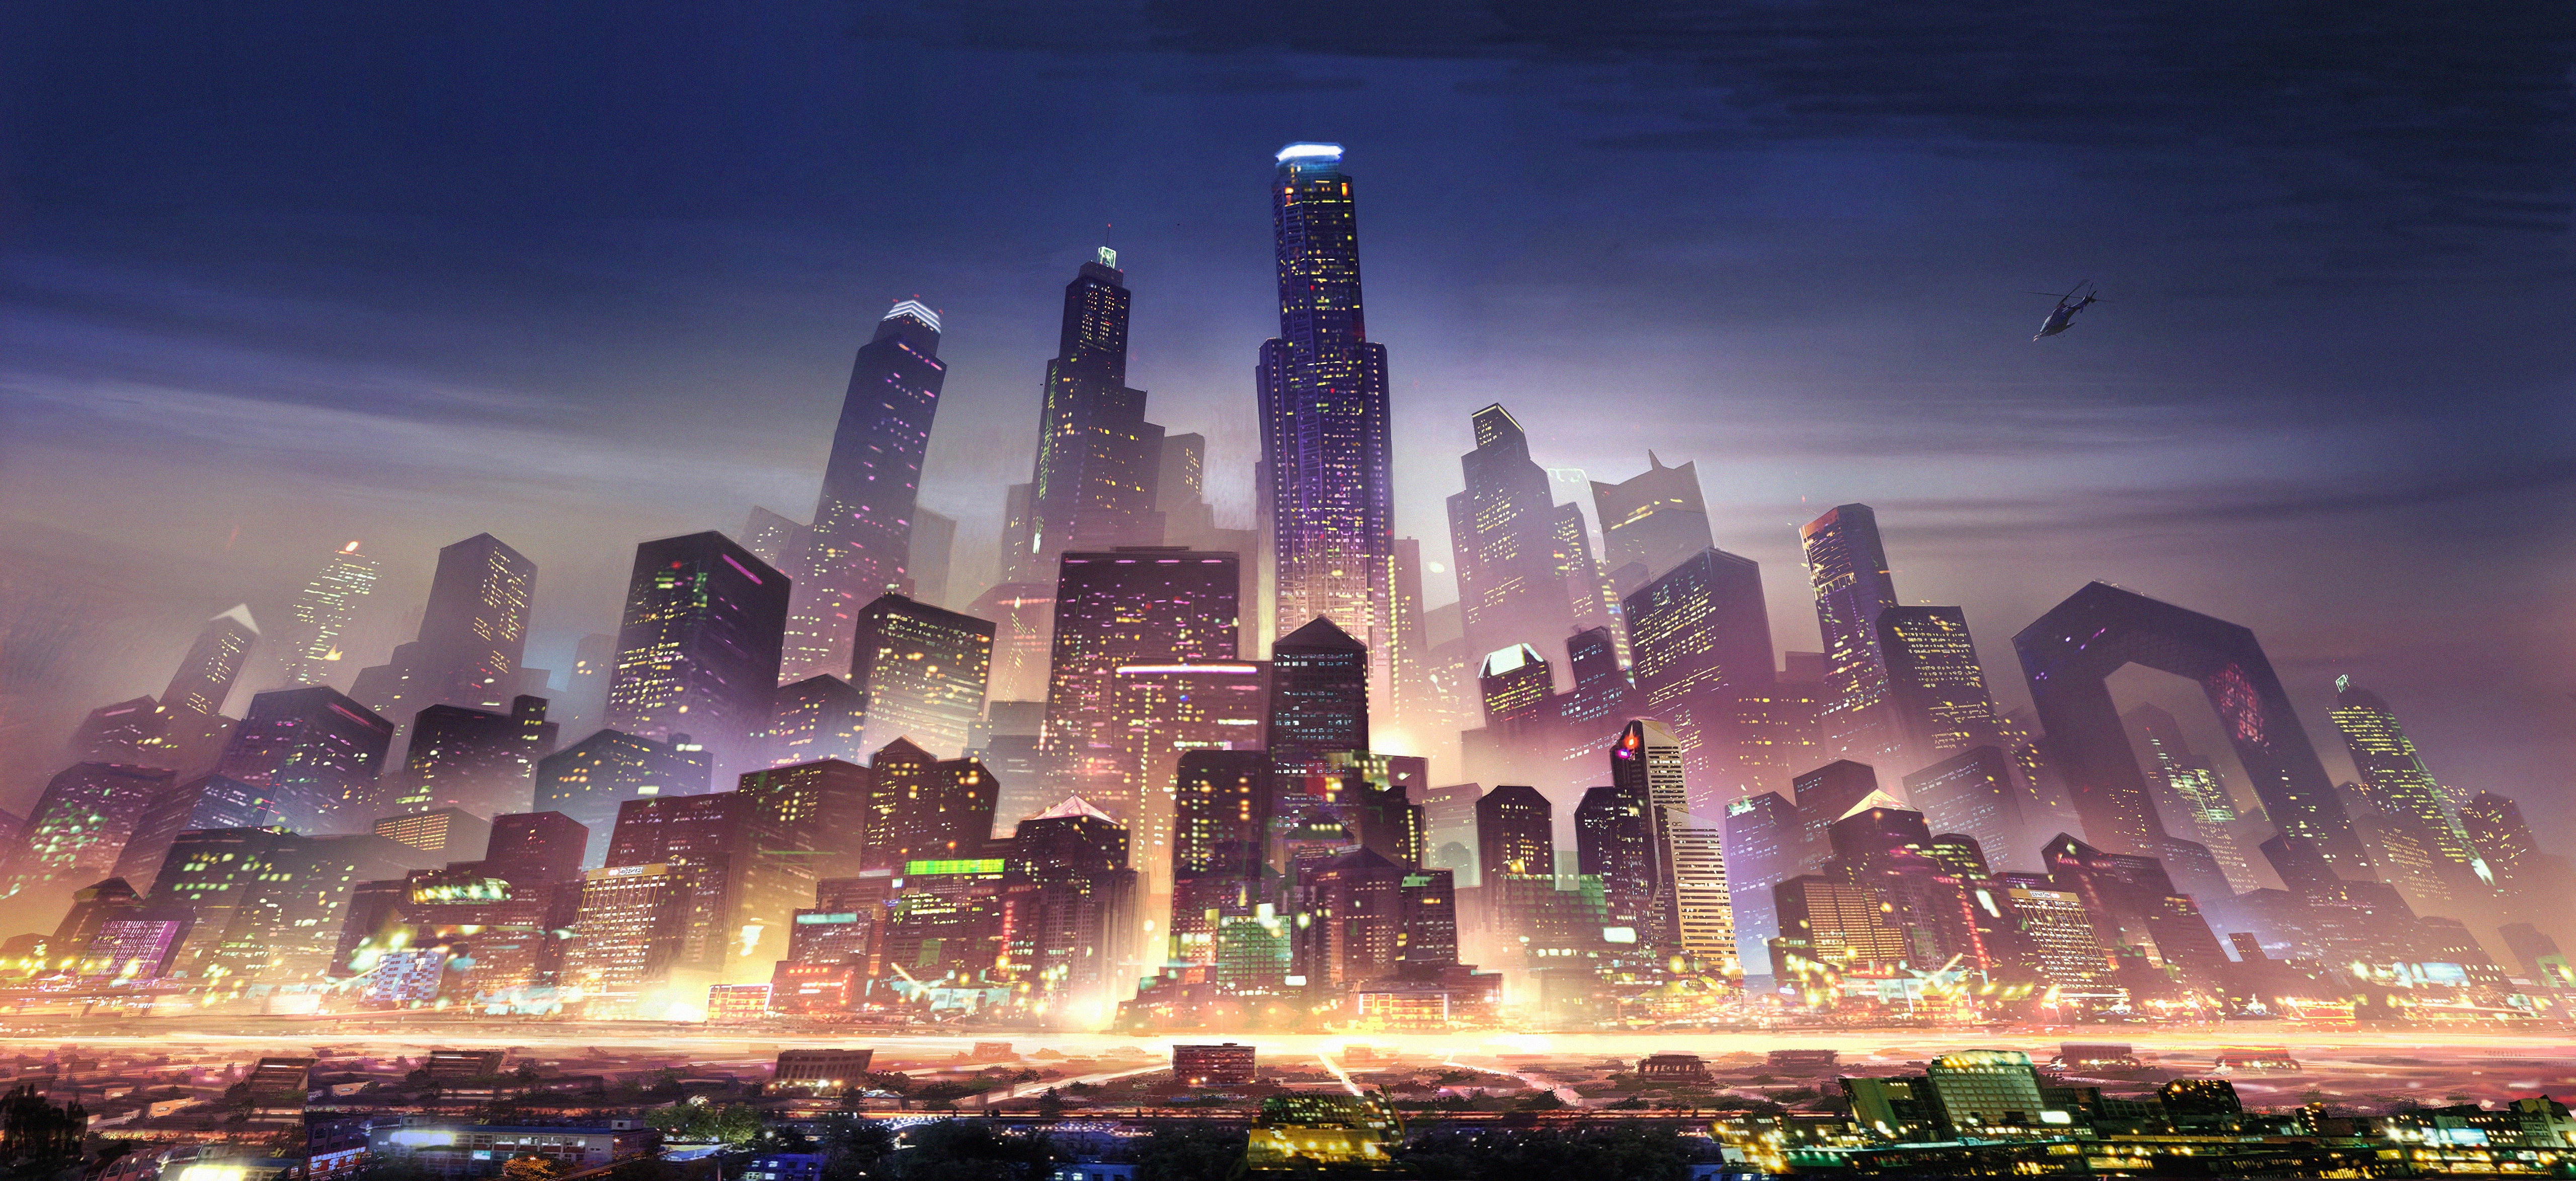 Free download wallpaper City, Skyscraper, Building, Cityscape, Sci Fi, Futuristic on your PC desktop